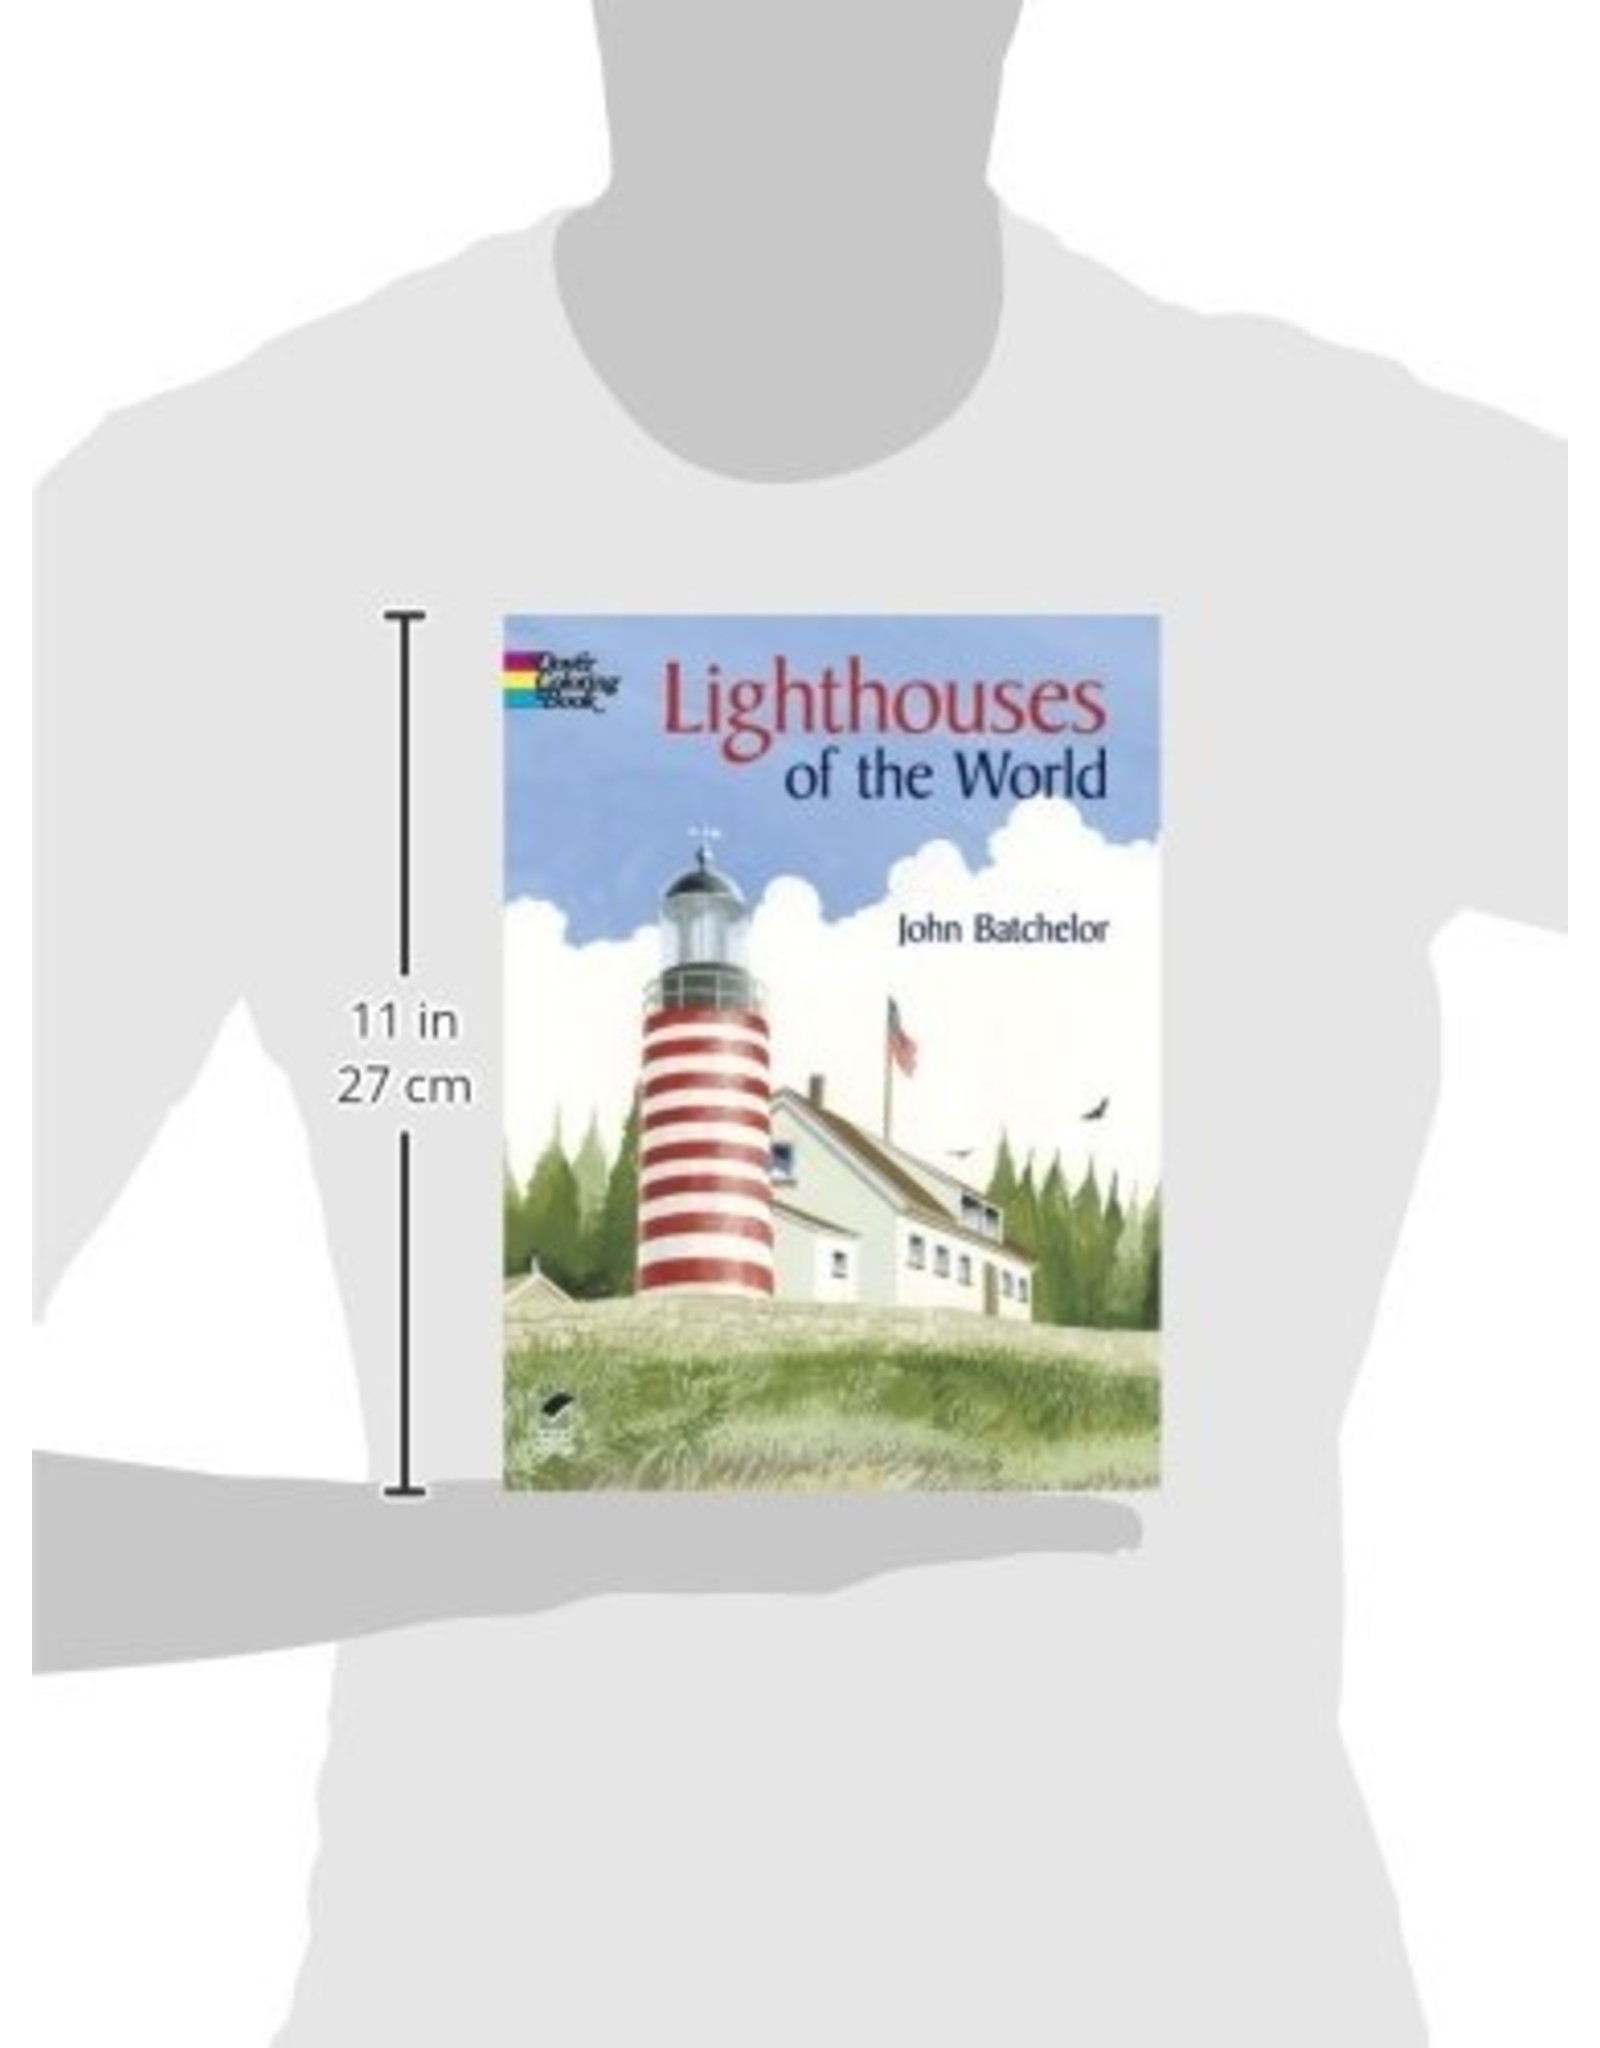 Lighthouses of the World - John Batchelor